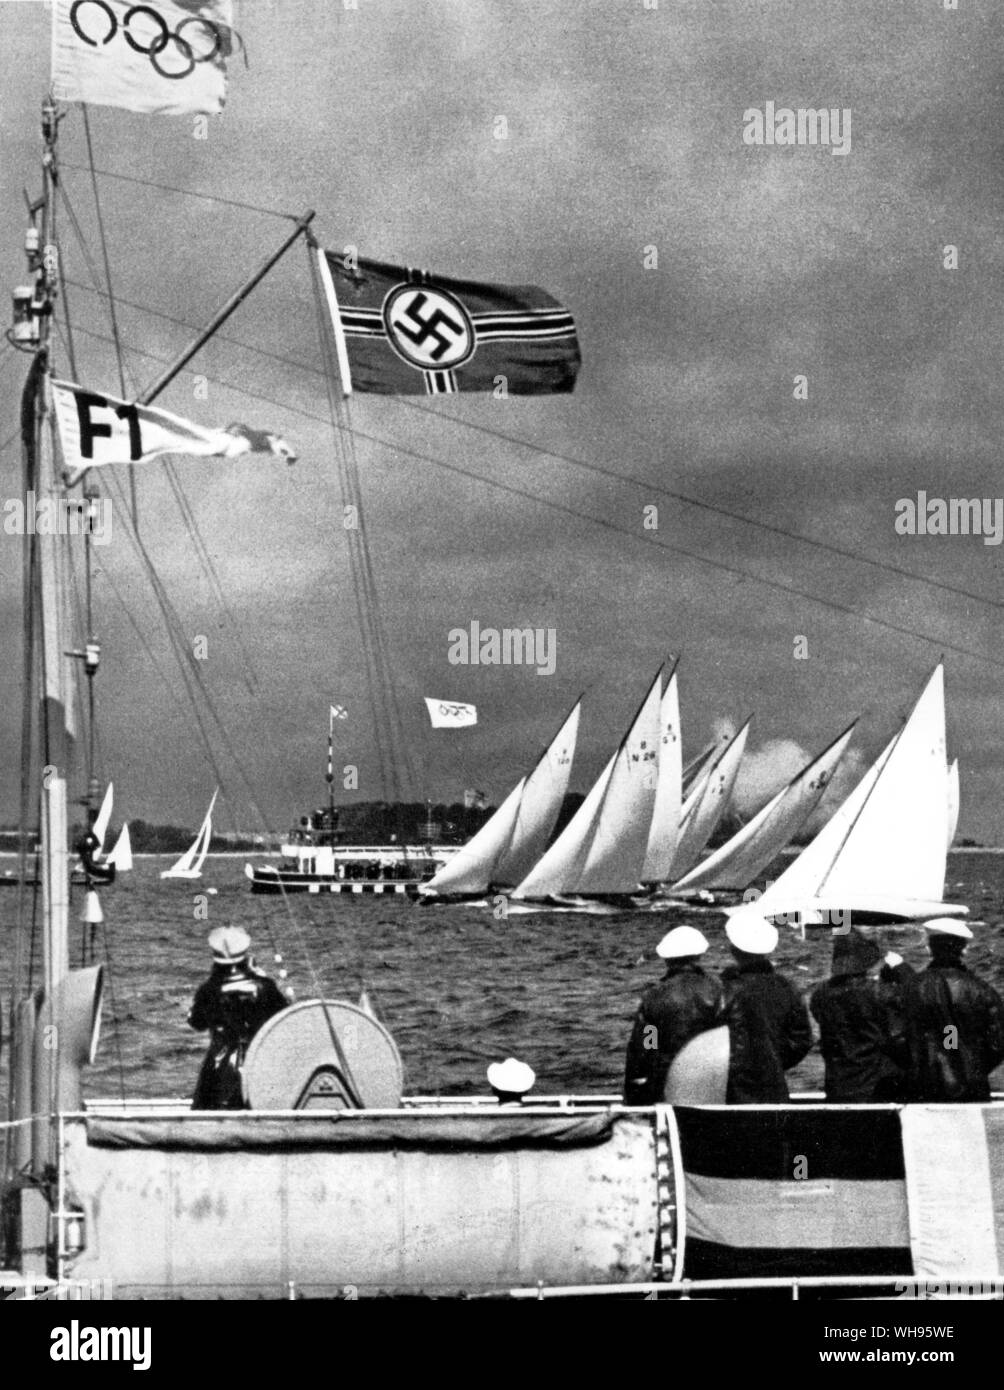 Le début de la course de classe 8 mètres lors de la deuxième journée de la voile à la Kiel Berlin 1936 Jeux Olympiques Banque D'Images